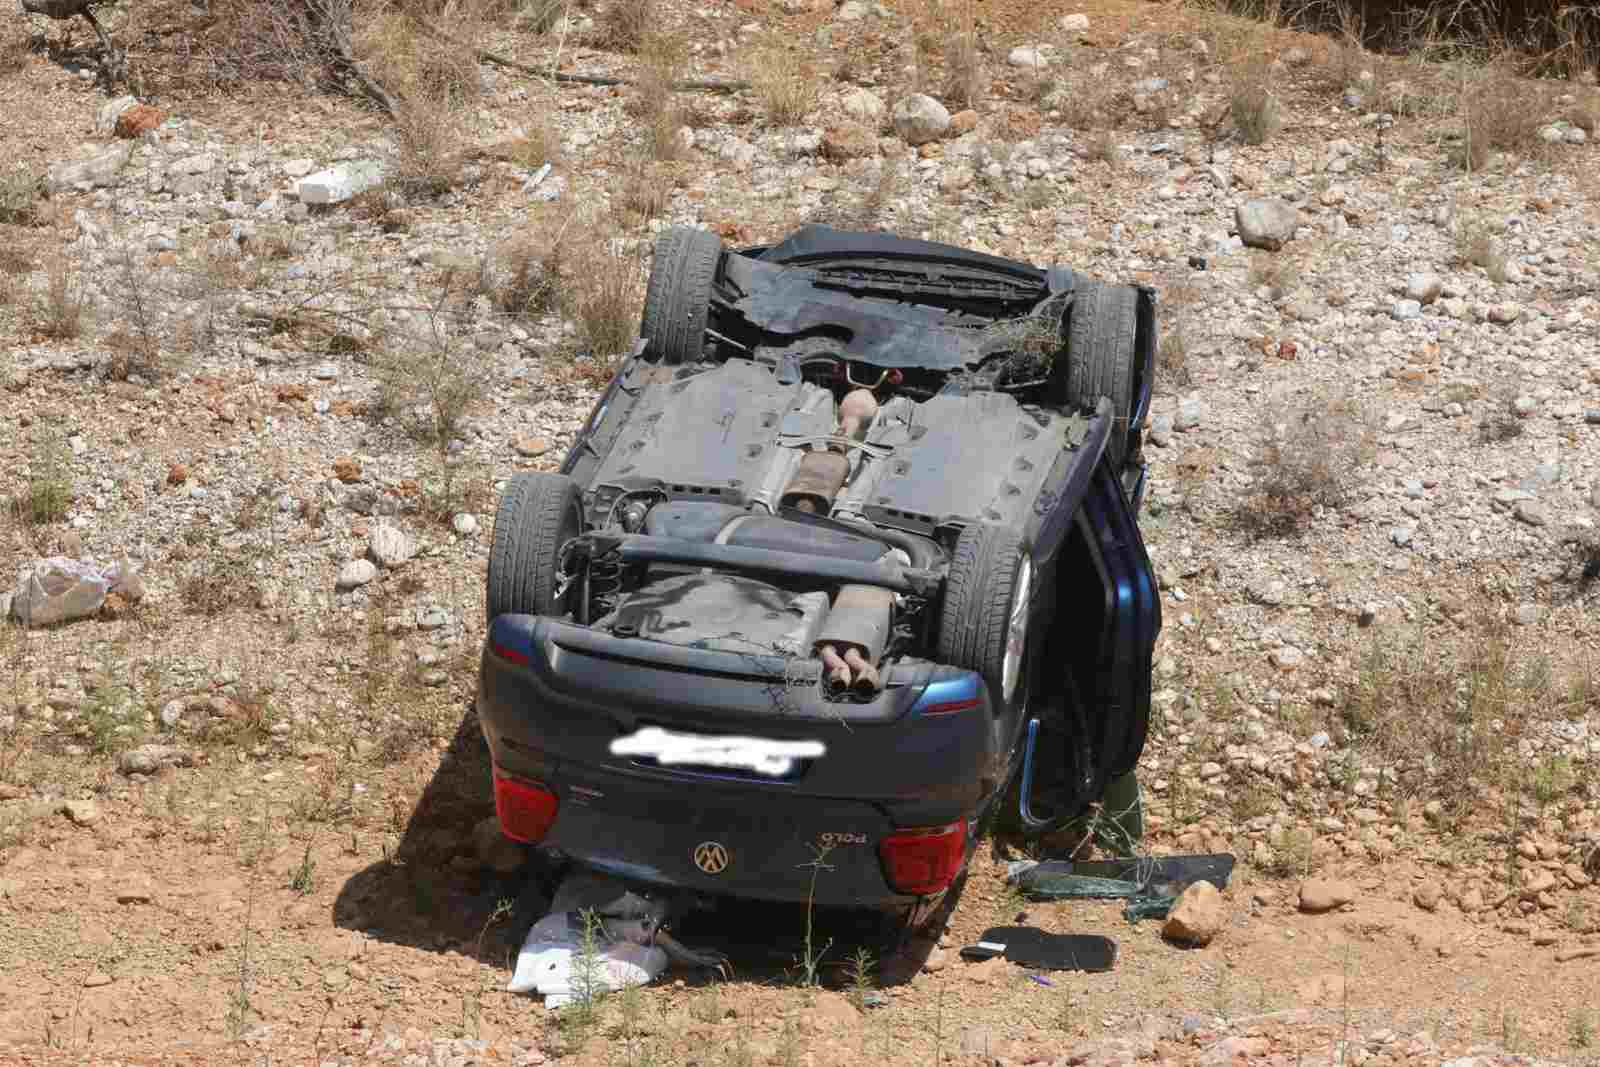 Ευρυτανία: Ζευγάρι έπεσε από γκρεμό 120 μέτρων με το αυτοκίνητο και επέζησε (φωτόυ